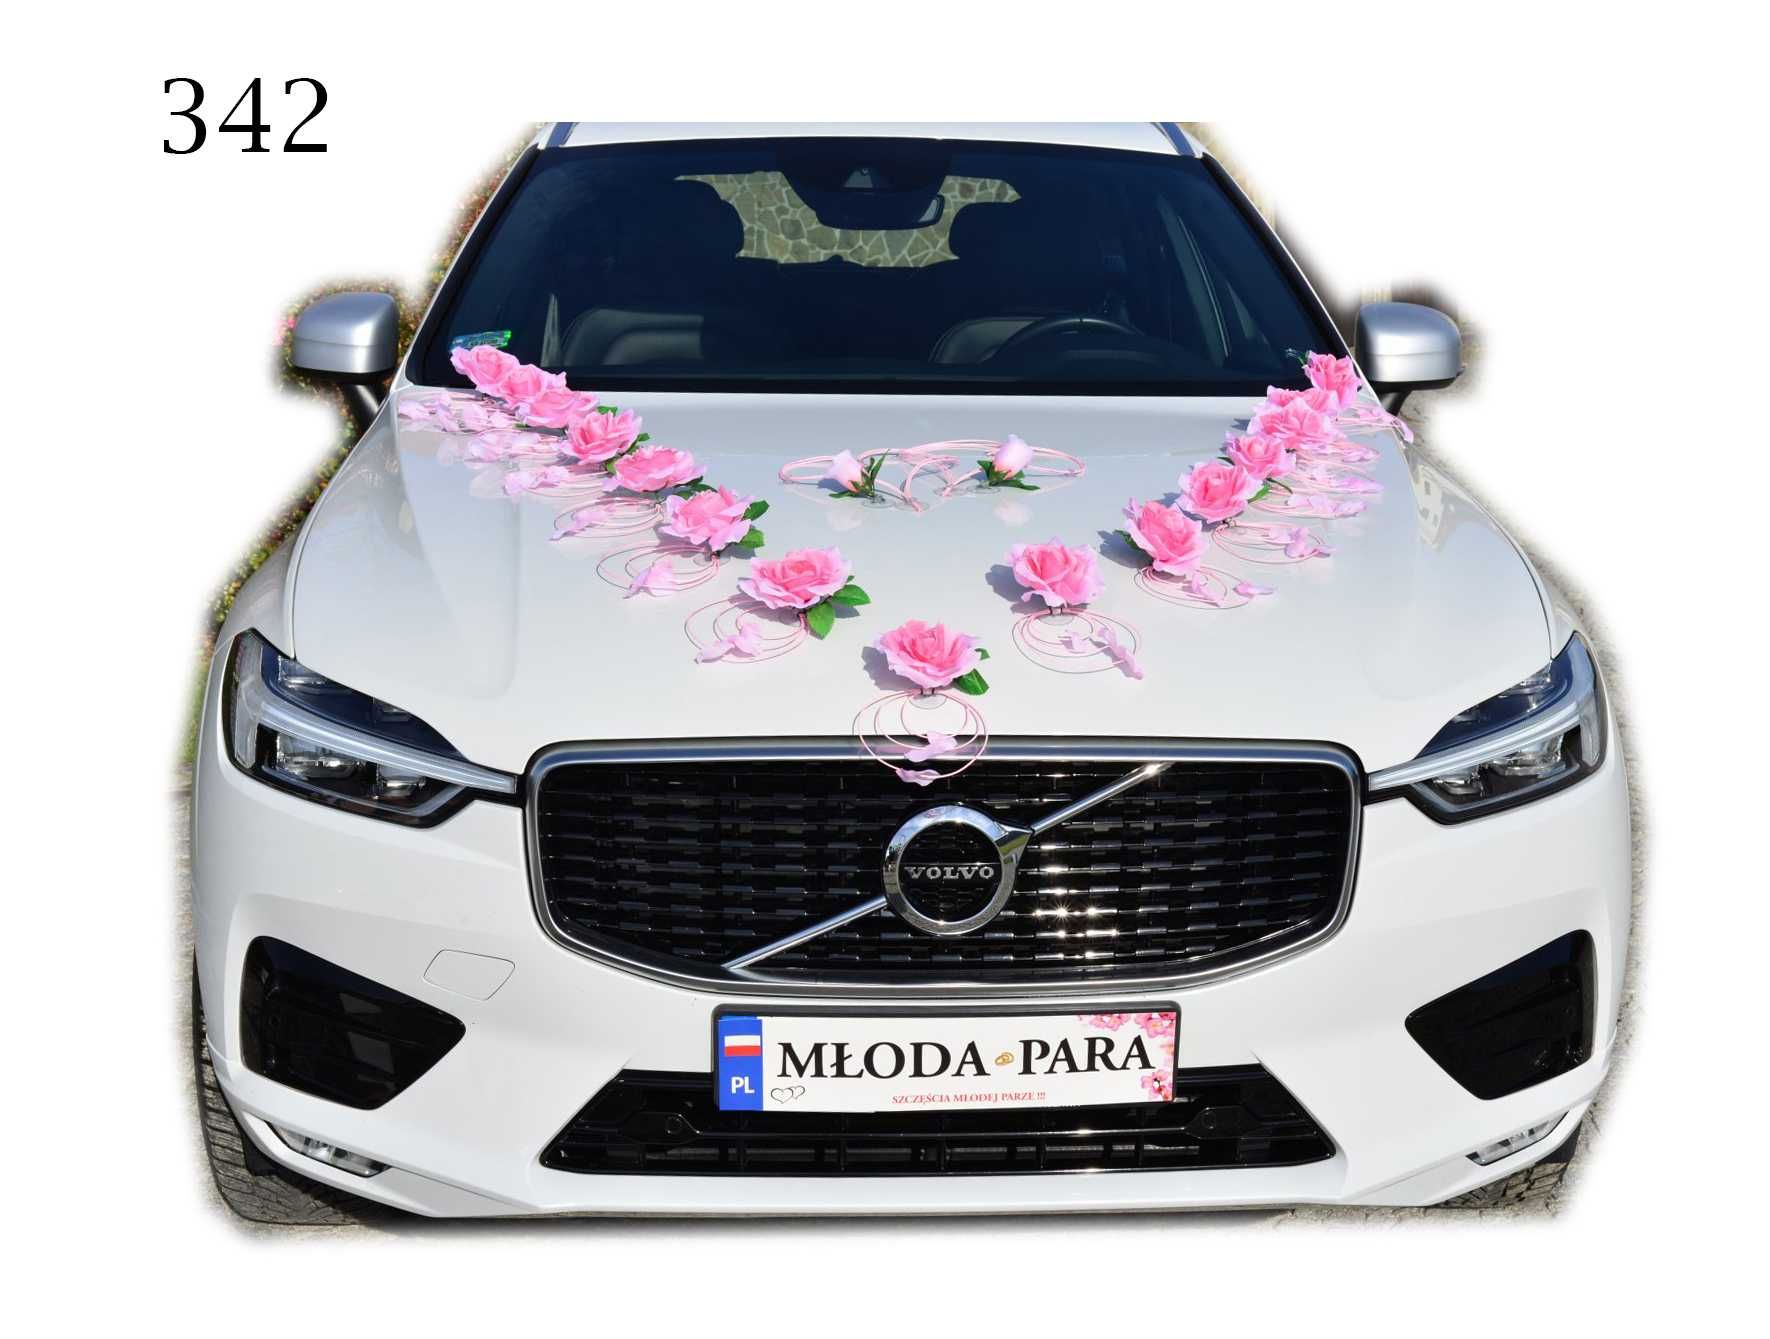 DUŻA piękna ozdoba dekoracja na samochód ślubny NOWA 342